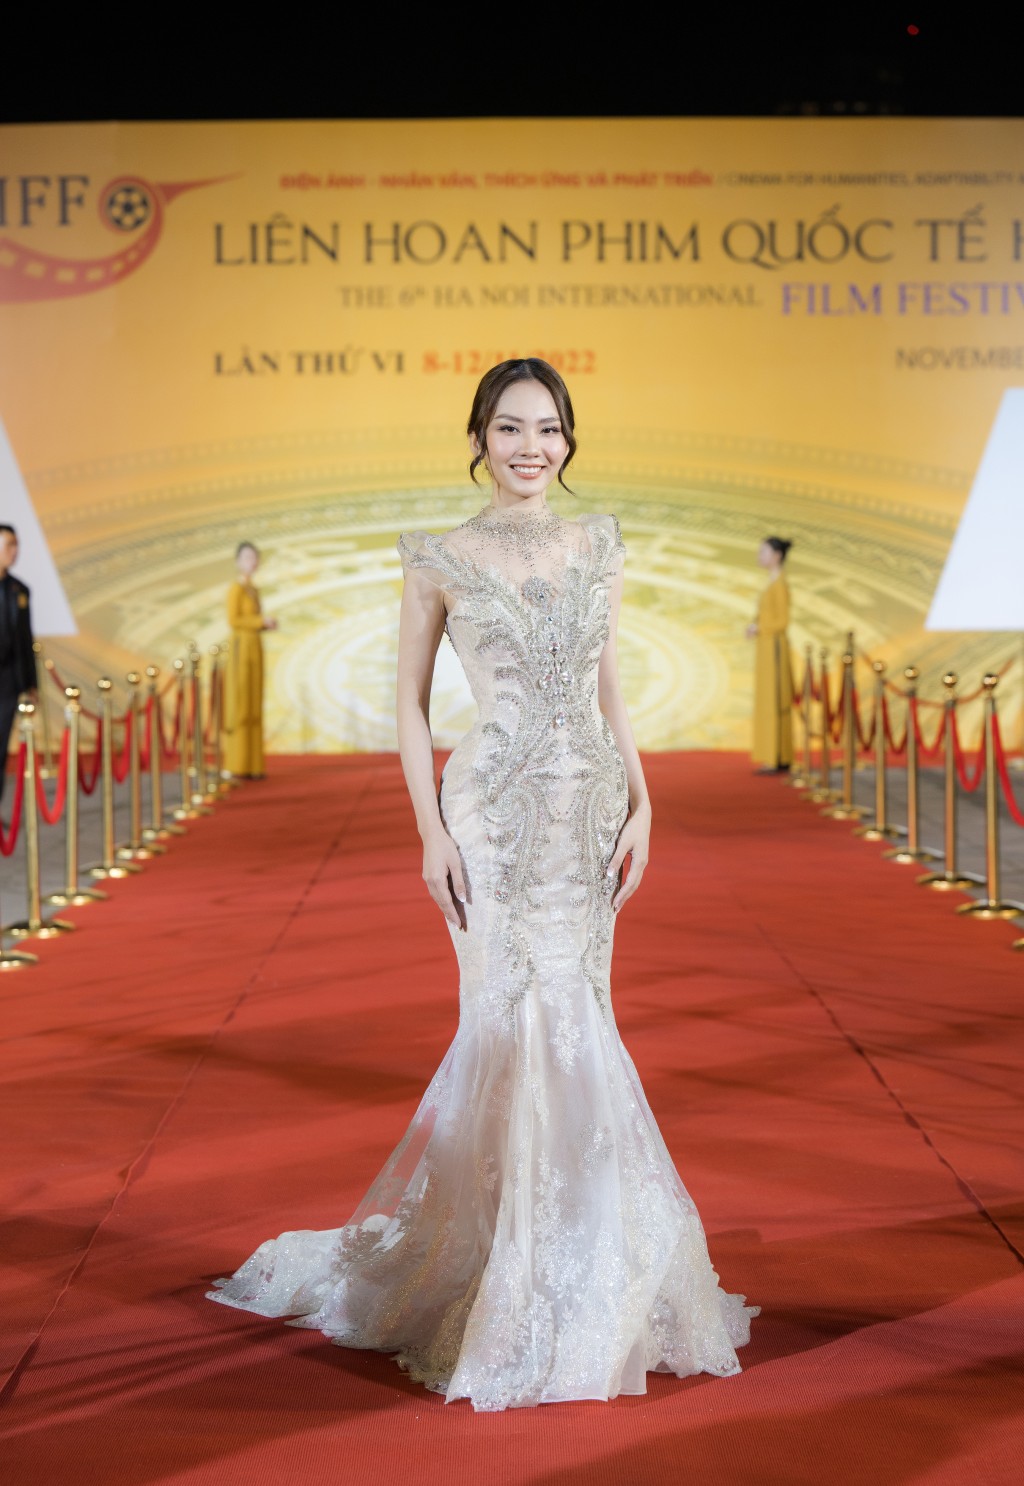 Hoa hậu Mai Phương đảm nhiệm vai trò MC song ngữ trong buổi lễ khai mạc Liên hoan phim Quốc tế Hà Nội lần thứ VI